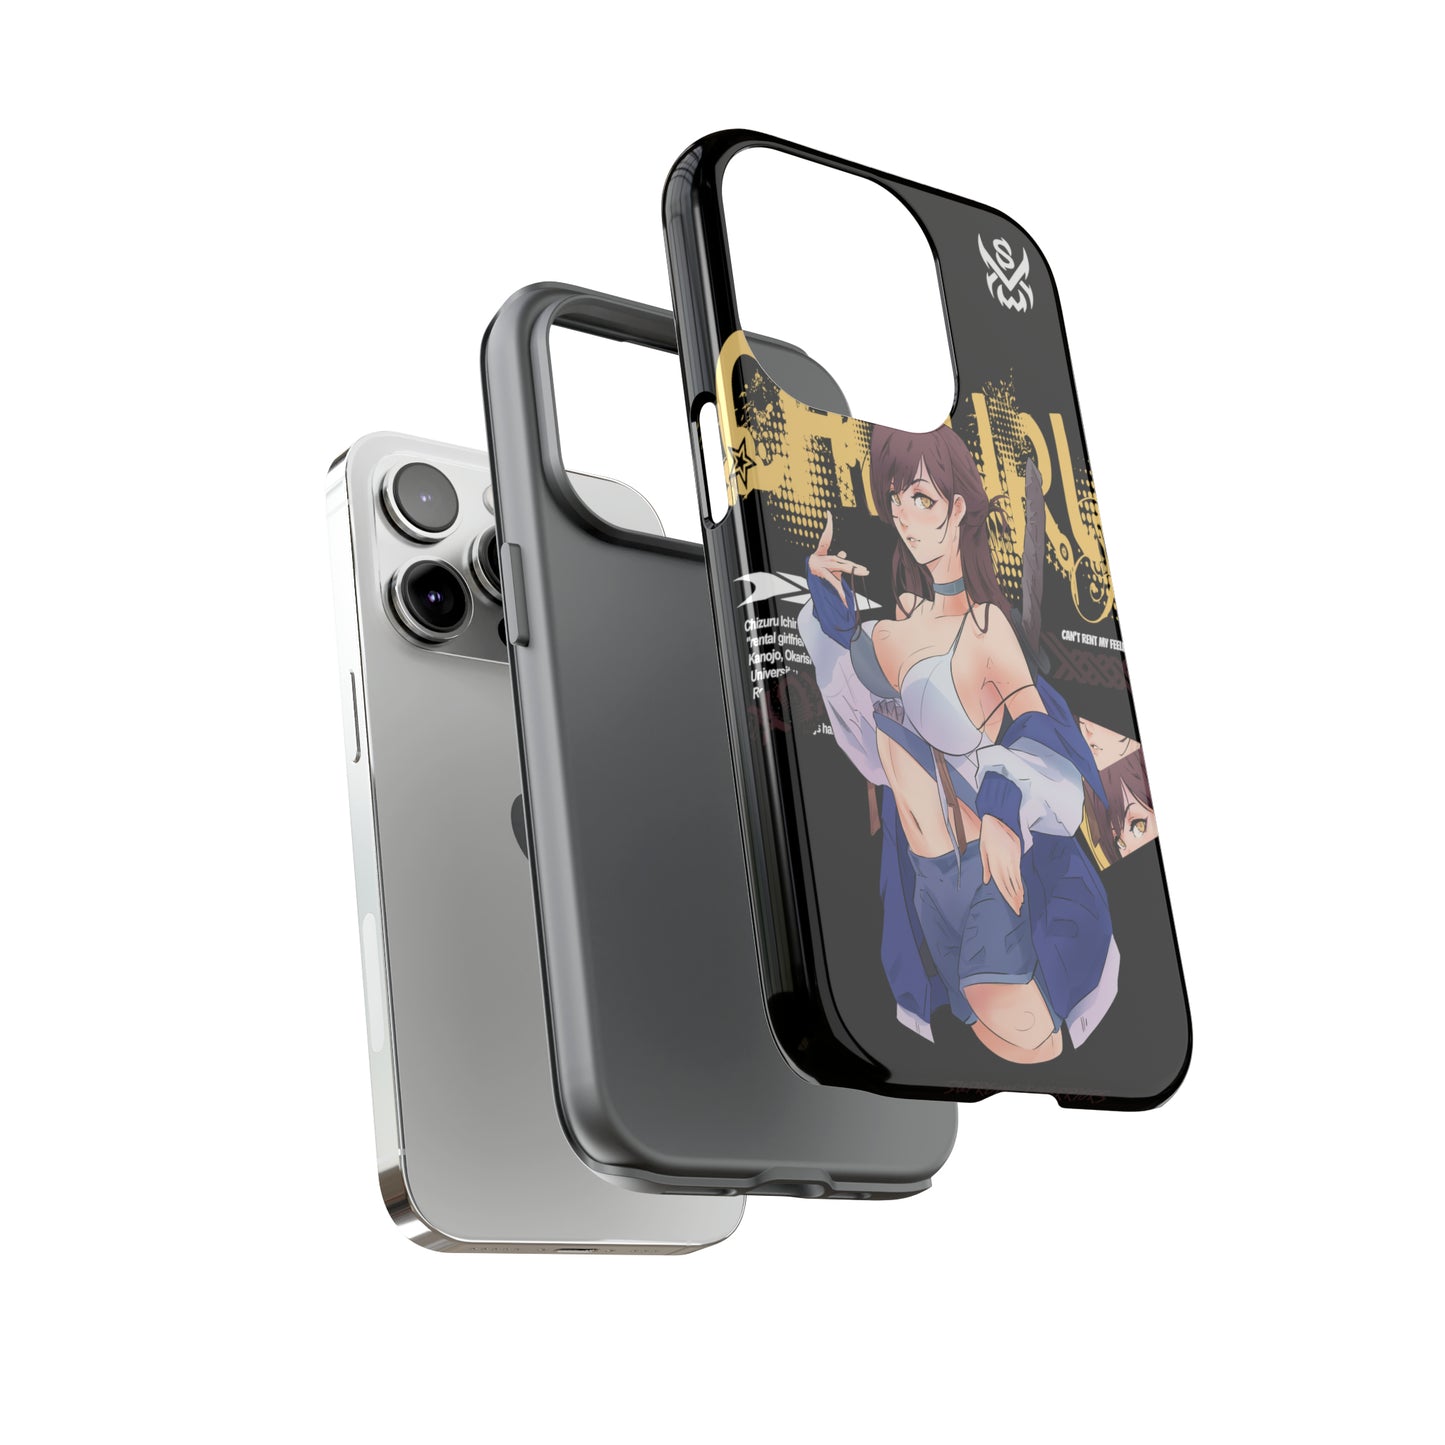 Chizuru / iPhone Cases - LIMITED